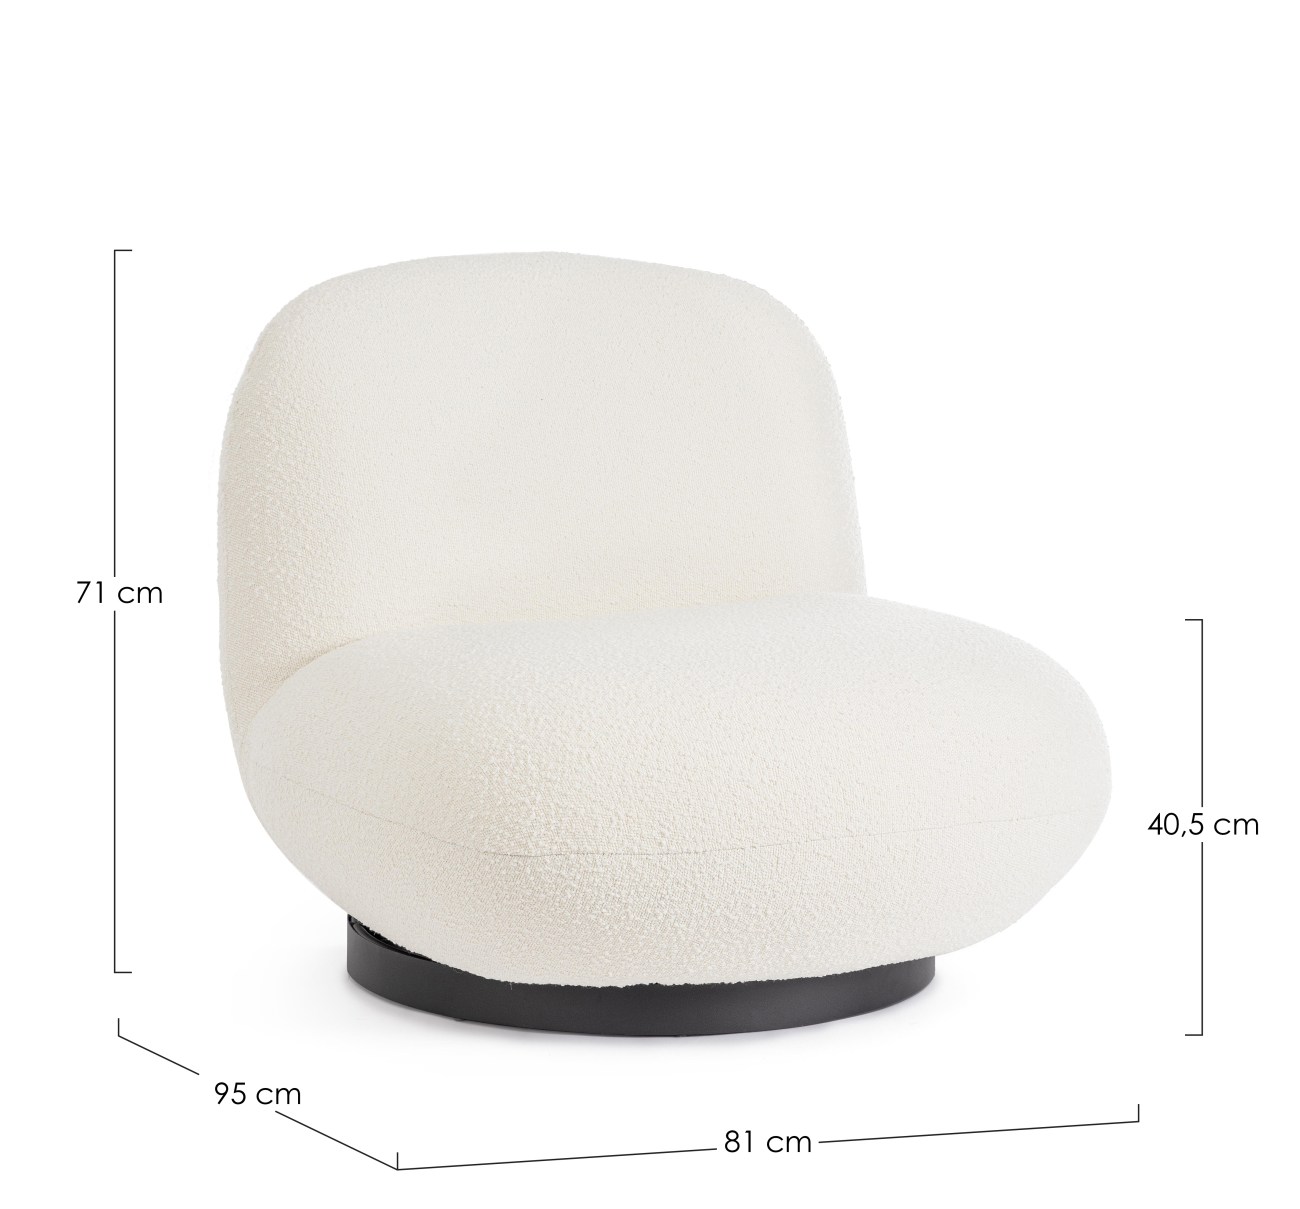 Der Sessel Margot überzeugt mit seinem modernen Stil. Gefertigt wurde er aus Bouclè-Stoff, welcher einen weißen Farbton besitzt. Das Gestell ist aus Metall und hat eine schwarze Farbe. Der Sessel verfügt über eine Drehfunktion.